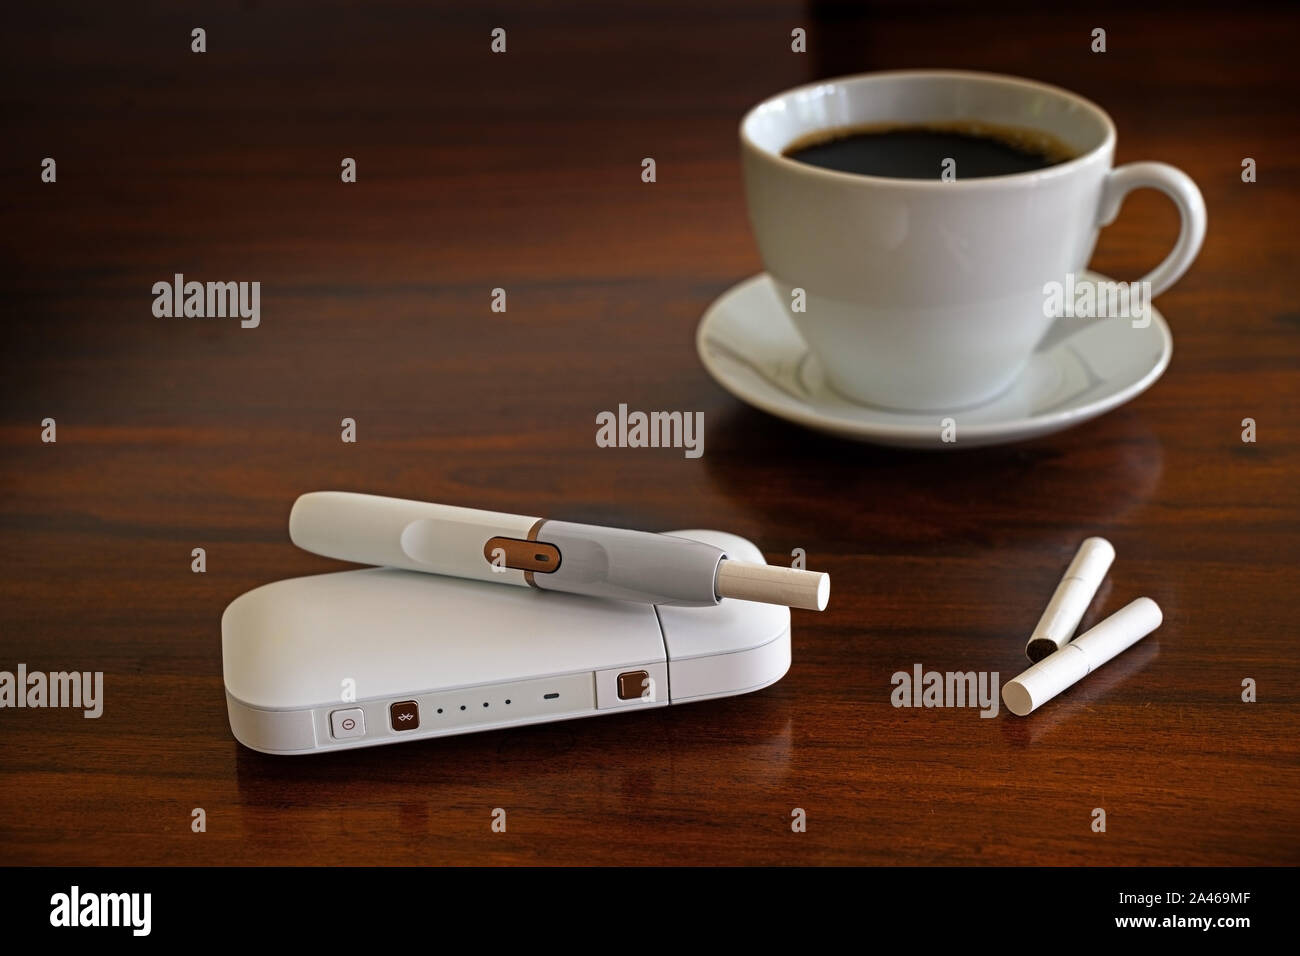 Heizung Tabak System und einer Tasse Kaffee auf einem braunen Tisch, e-Zigarette mit Tabak Sticks, erzeugt ein Nikotin Aerosol mit angeblich weniger zu Stockfoto